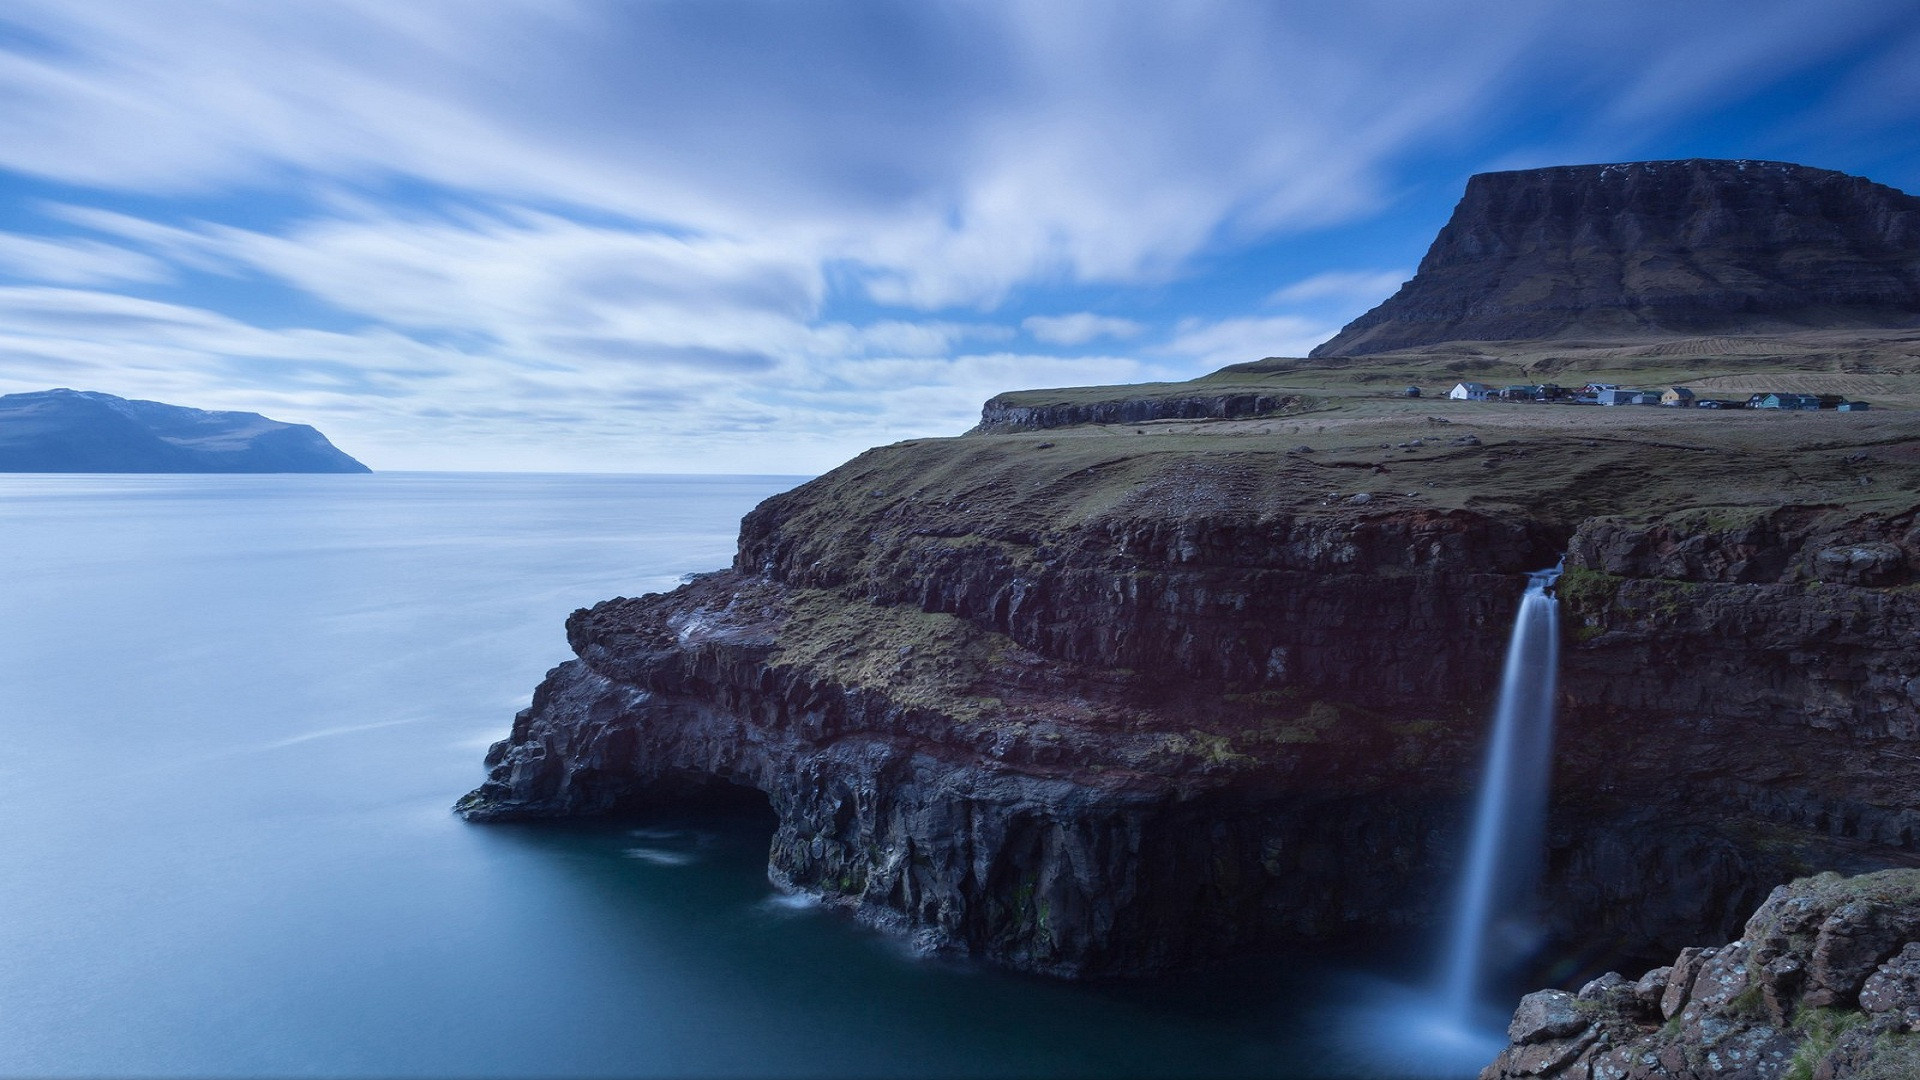 Faroe Islands, Landscape photography, HD wallpaper, Breathtaking image, 1920x1080 Full HD Desktop